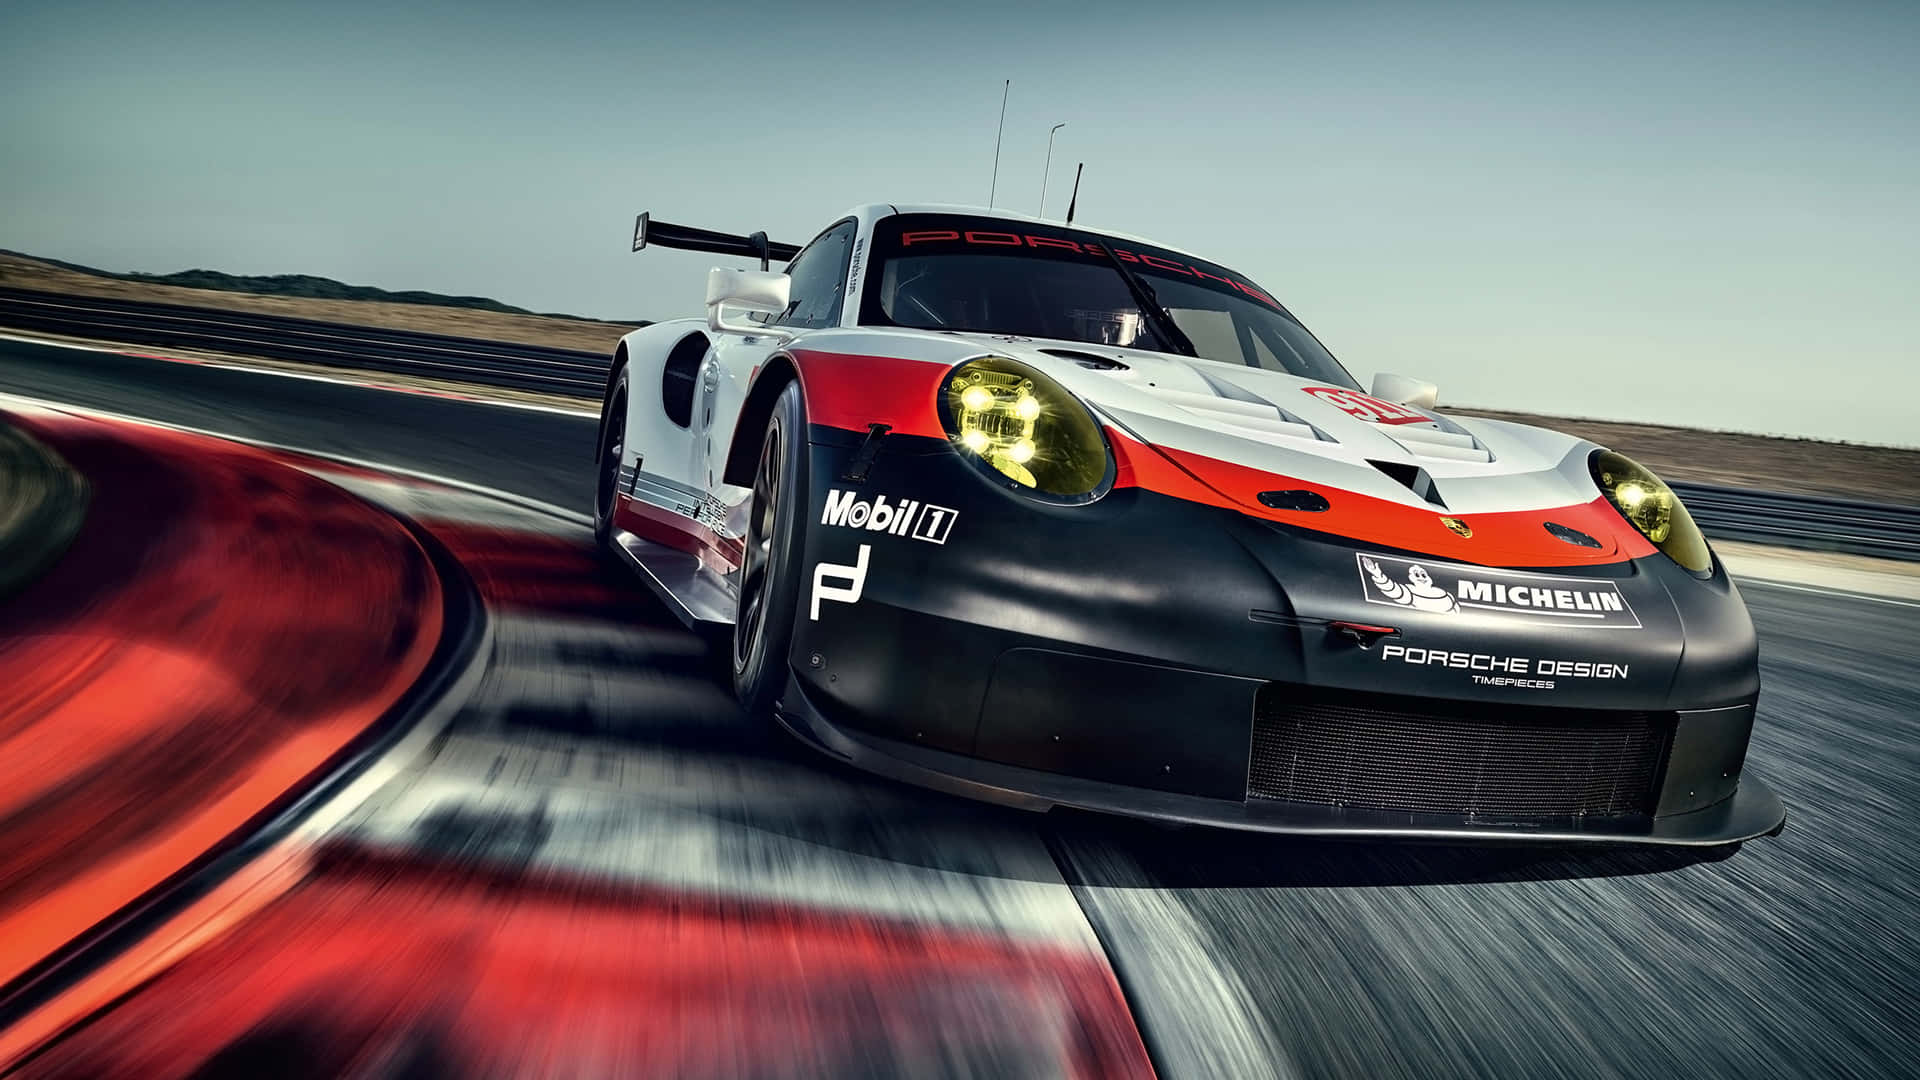 Porsche2560 X 1440 Hintergrund